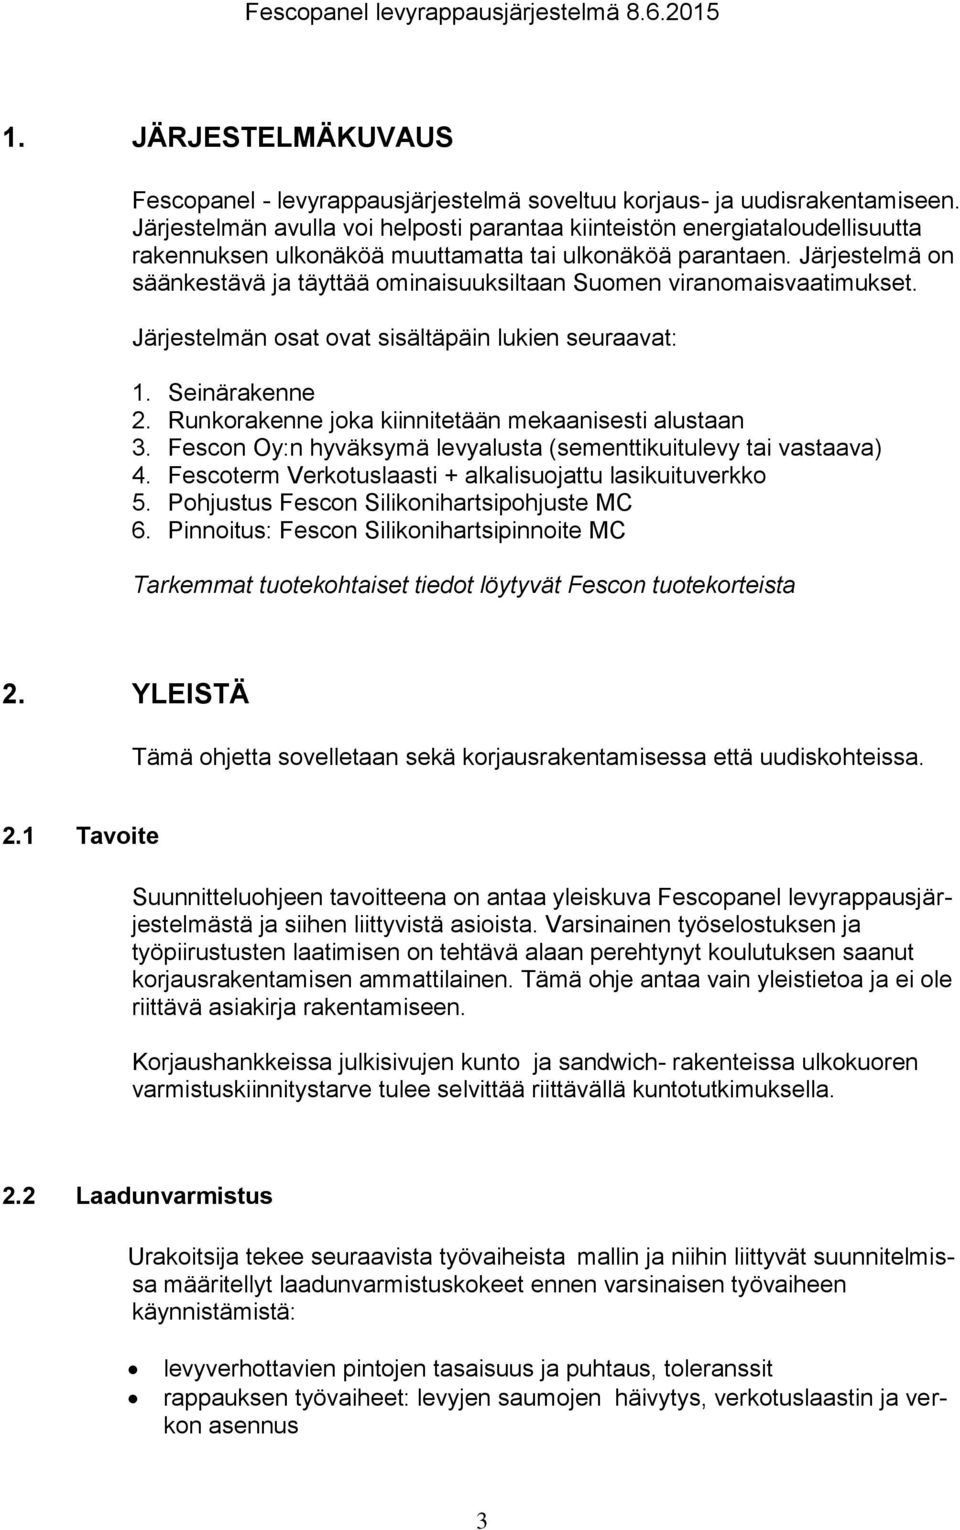 Järjestelmä on säänkestävä ja täyttää ominaisuuksiltaan Suomen viranomaisvaatimukset. Järjestelmän osat ovat sisältäpäin lukien seuraavat: 1. Seinärakenne 2.